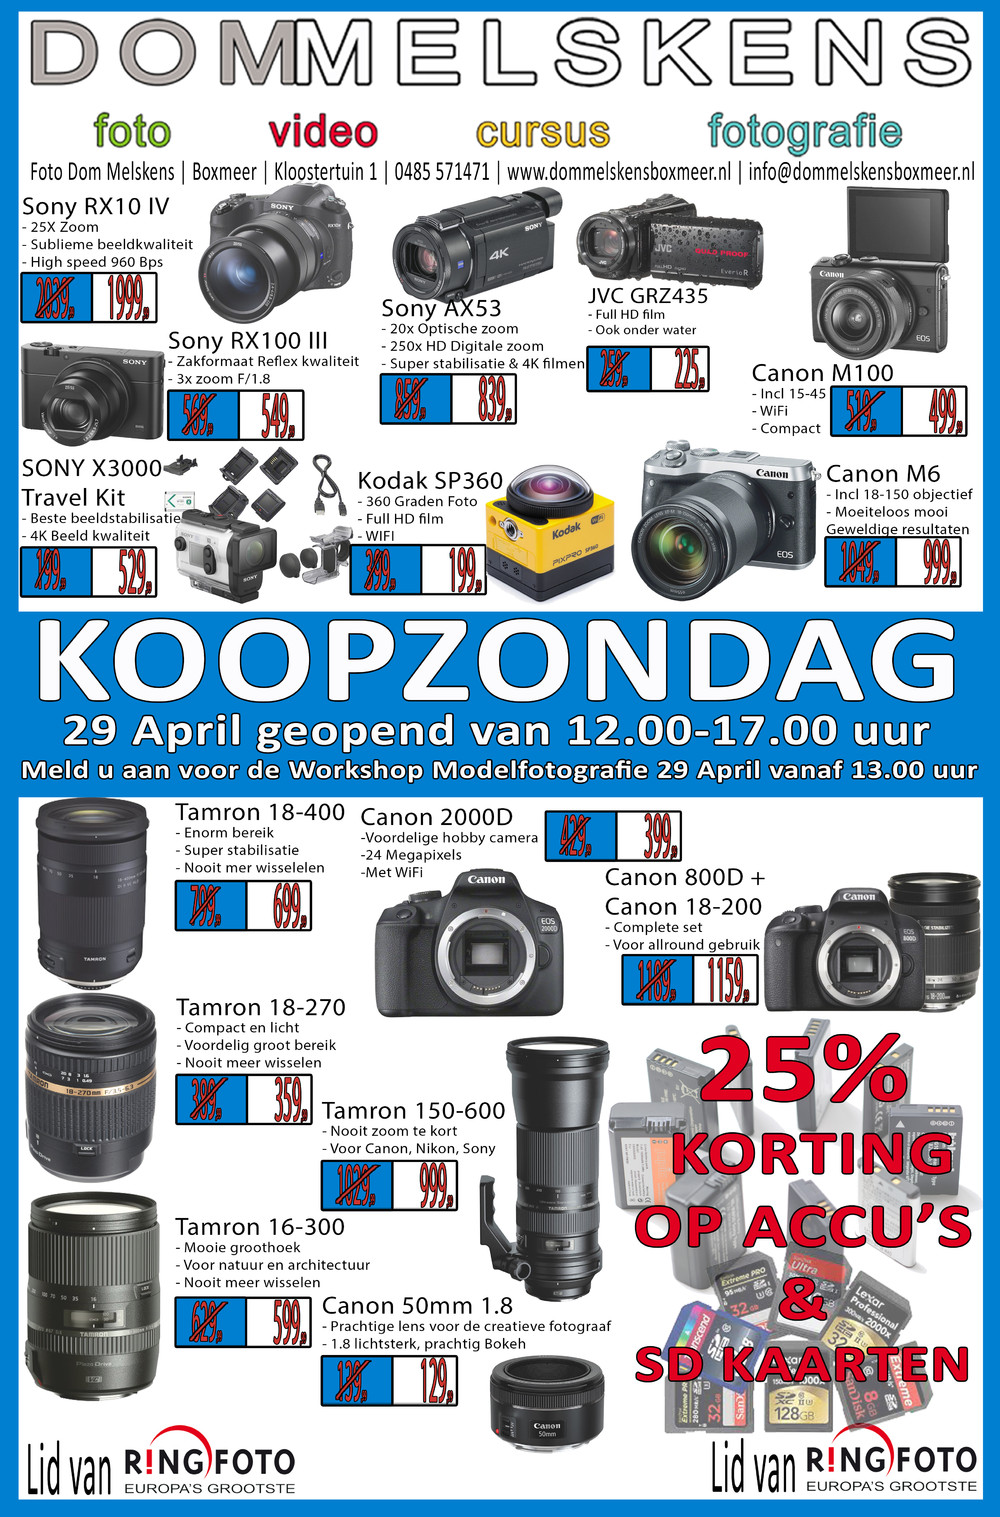 Zondag 29 april KOOPZONDAG. Profiteer van de aanbiedingen en doe mee met de Workshop MODEL FOTOGRAFIE voor slechts €5EURO